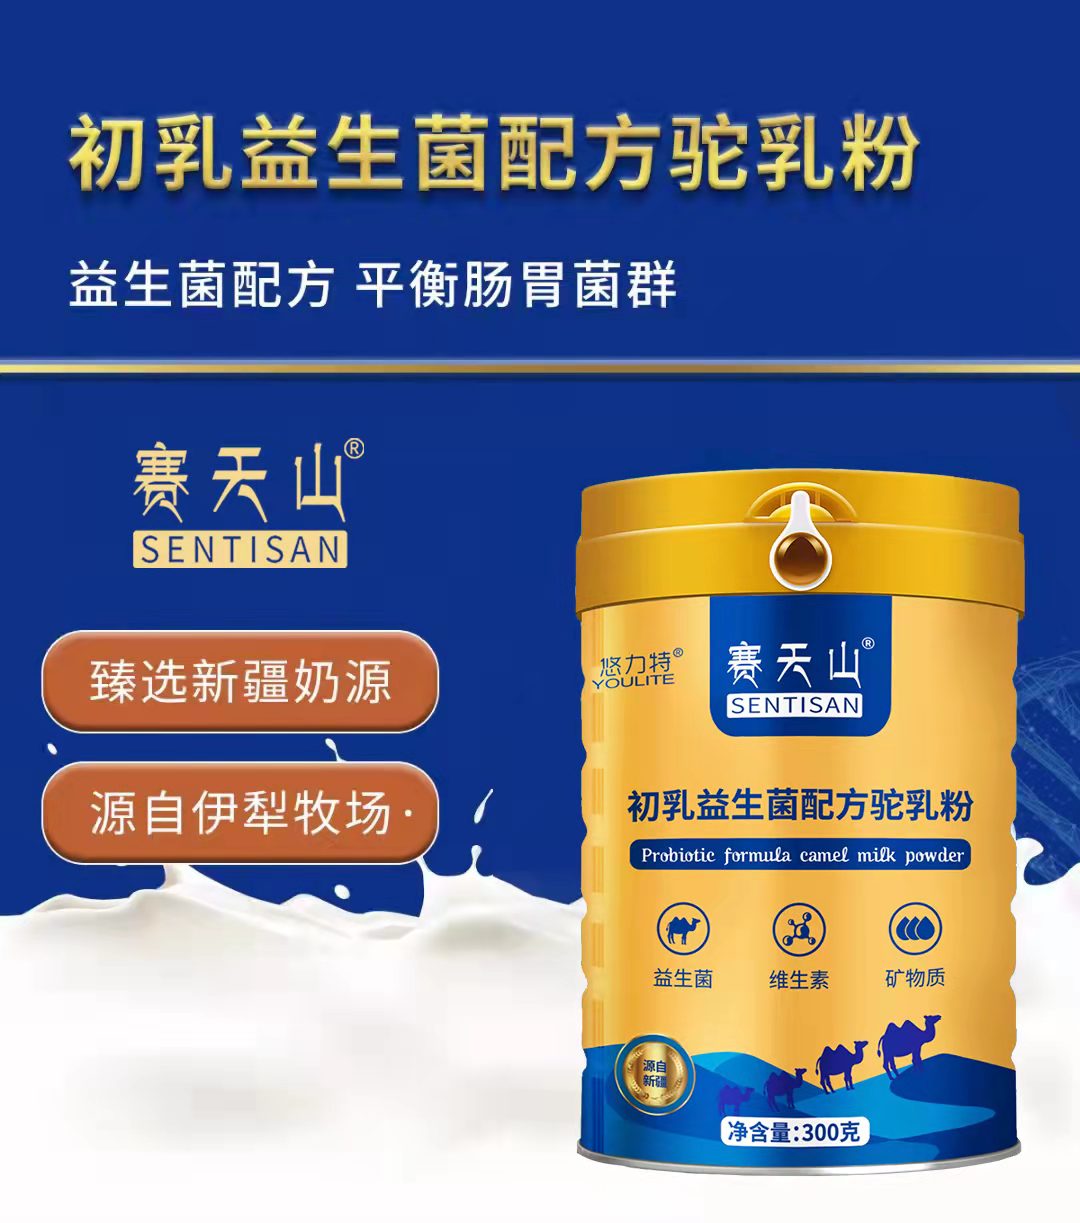 昭蘇縣新天雪乳製品有限責任公司賽天山駝奶批發供貨